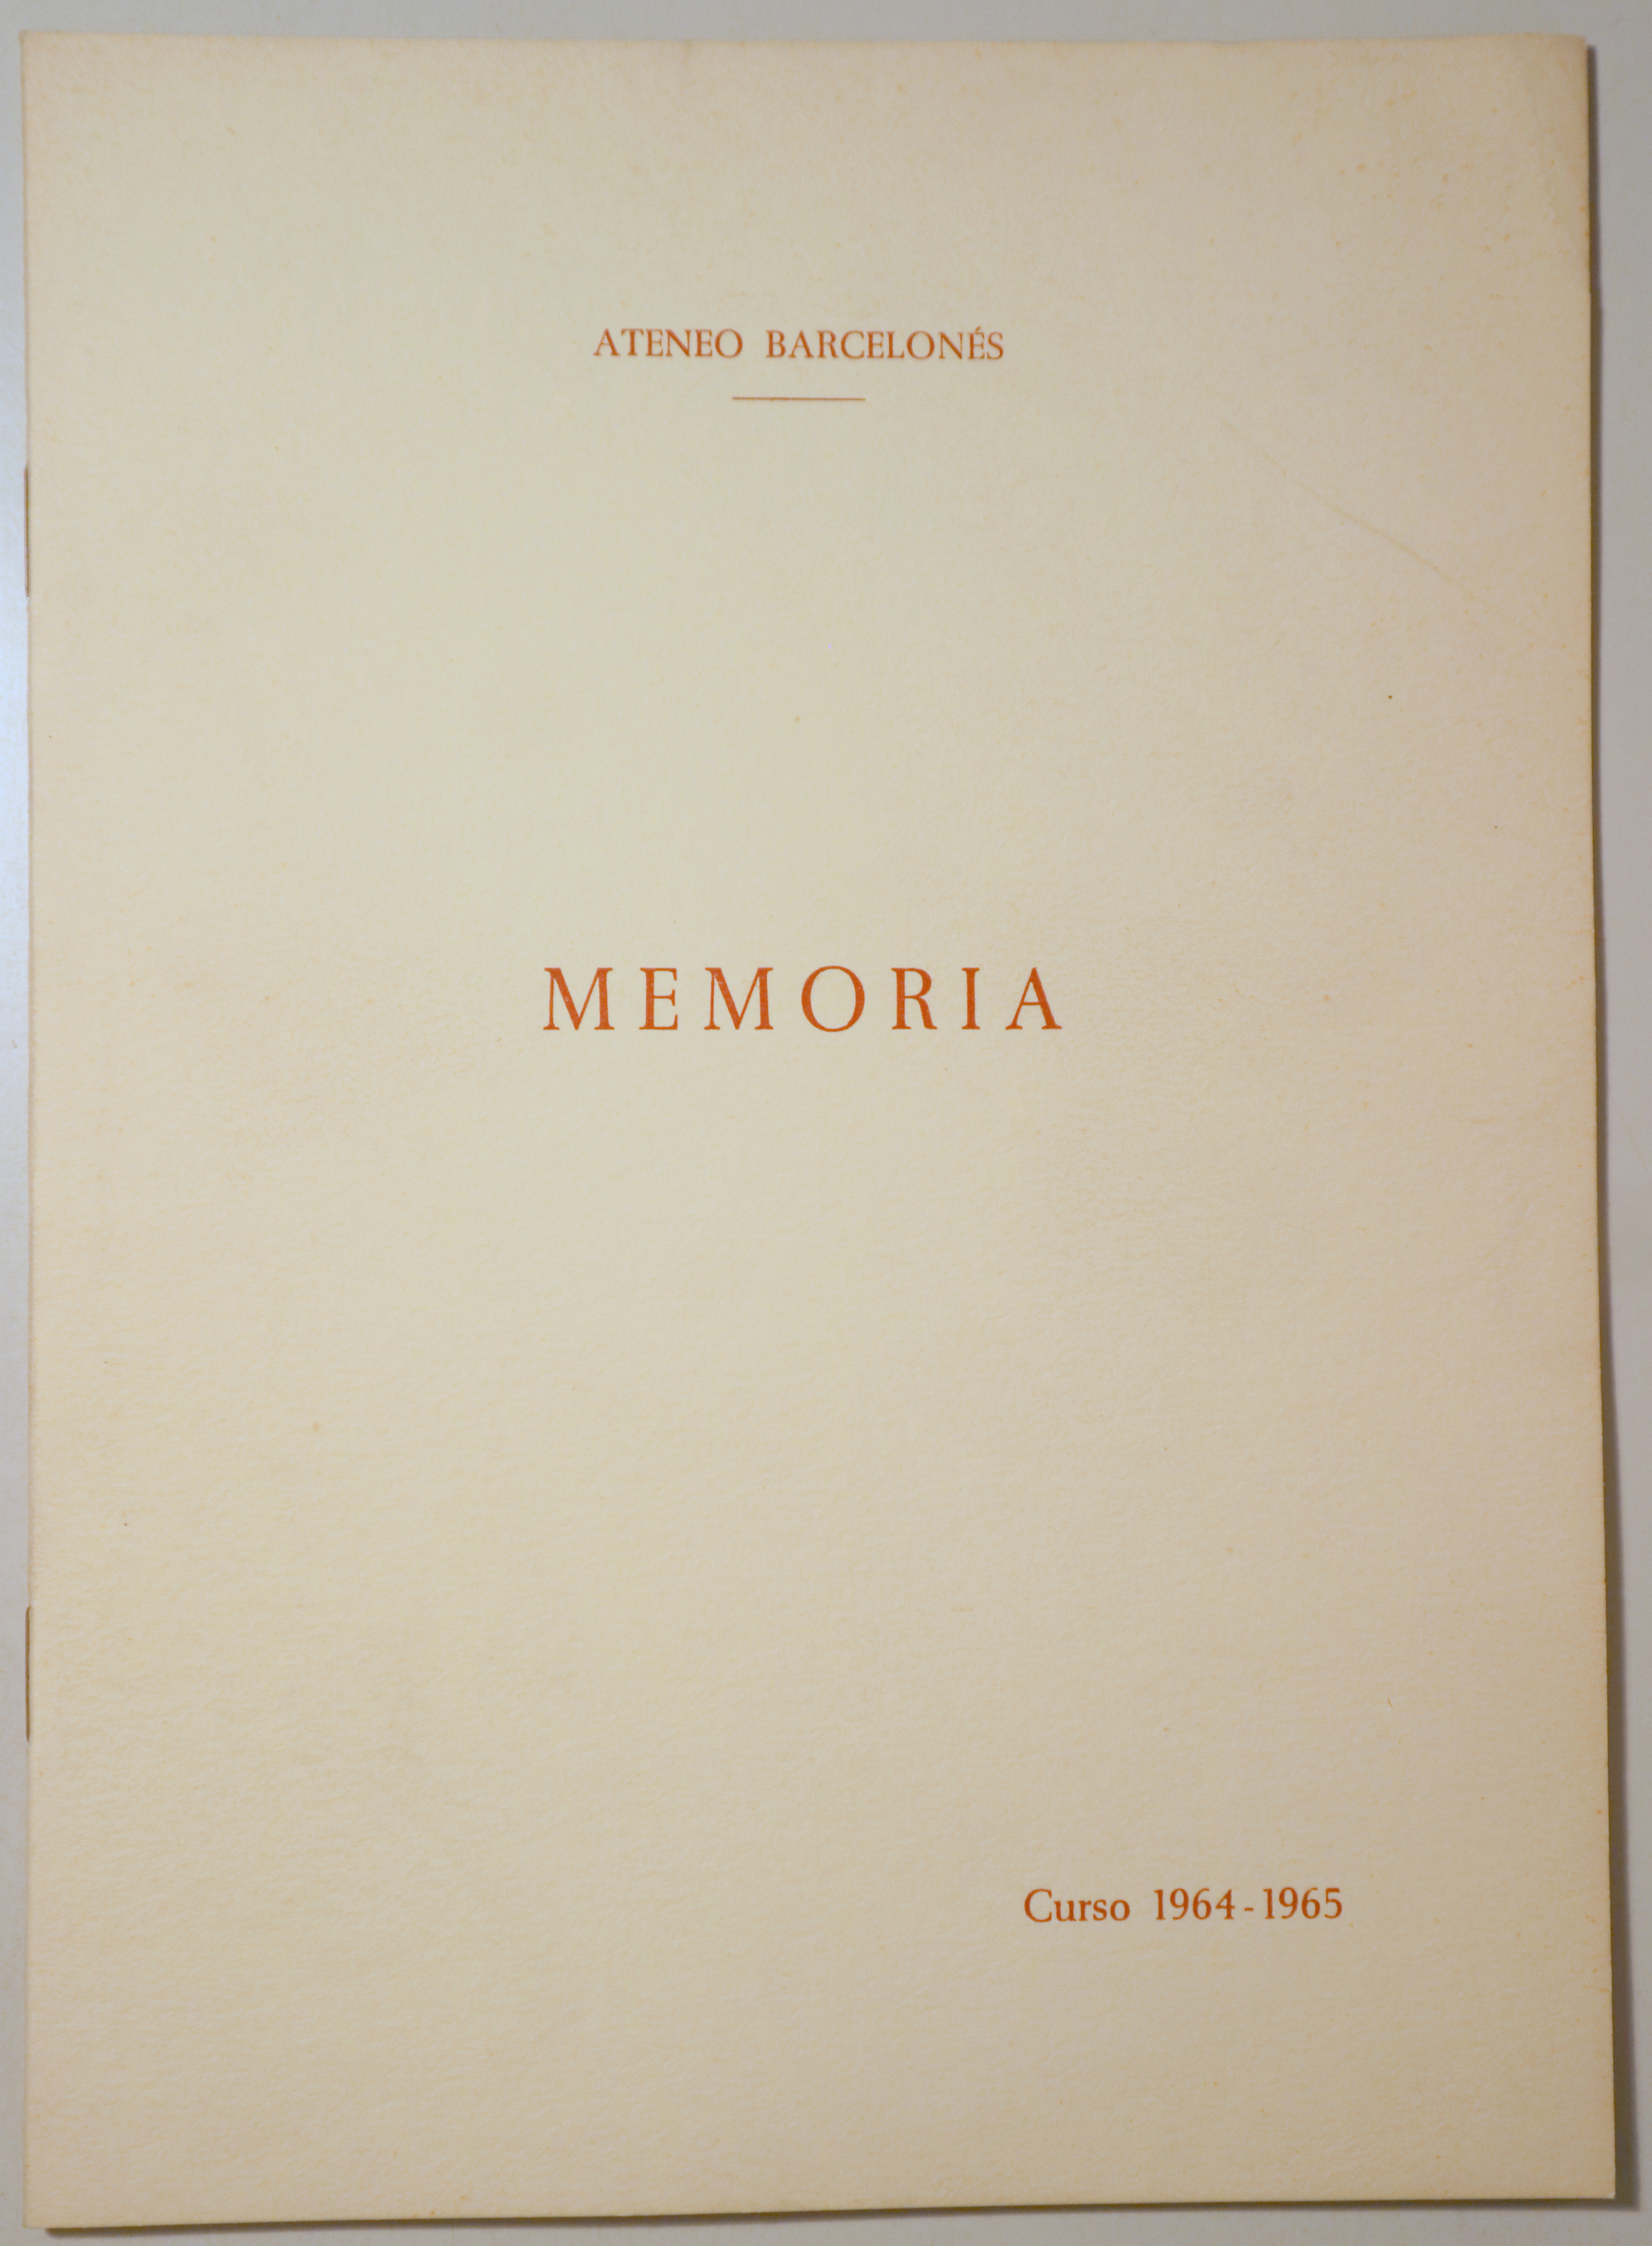 ATENEO BARCELONÉS. MEMORIA. Curso 1964-65 -Barcelona 1964